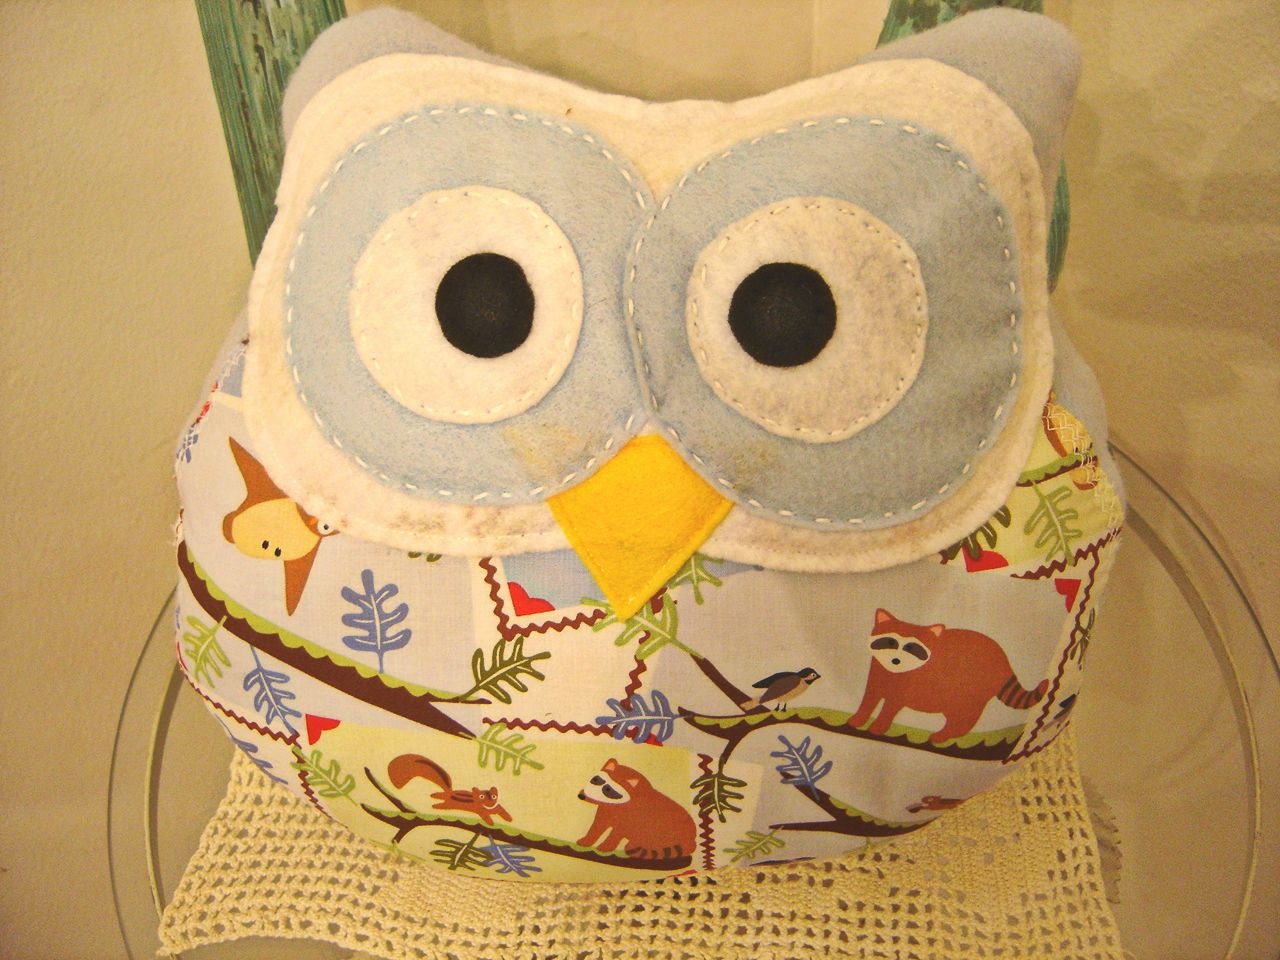 Owl Pillow